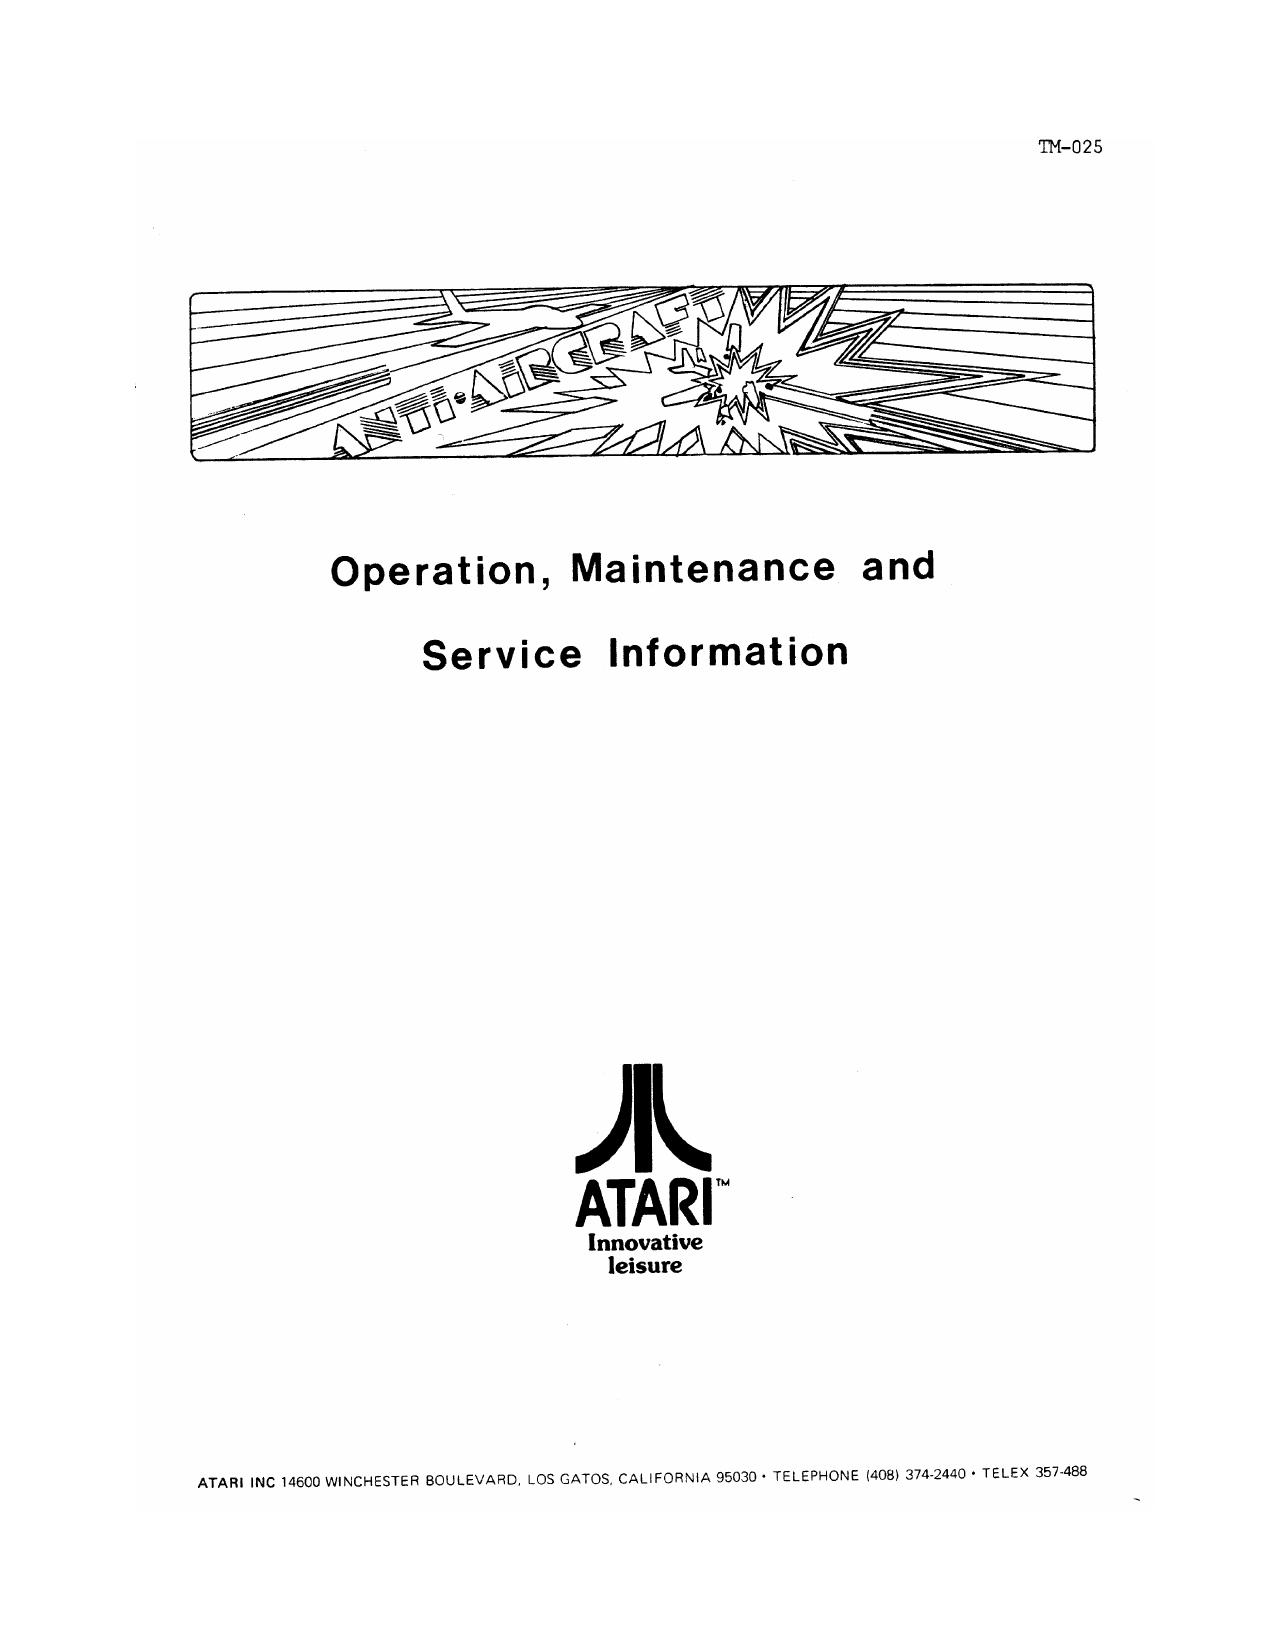 AntiAircraft Manual